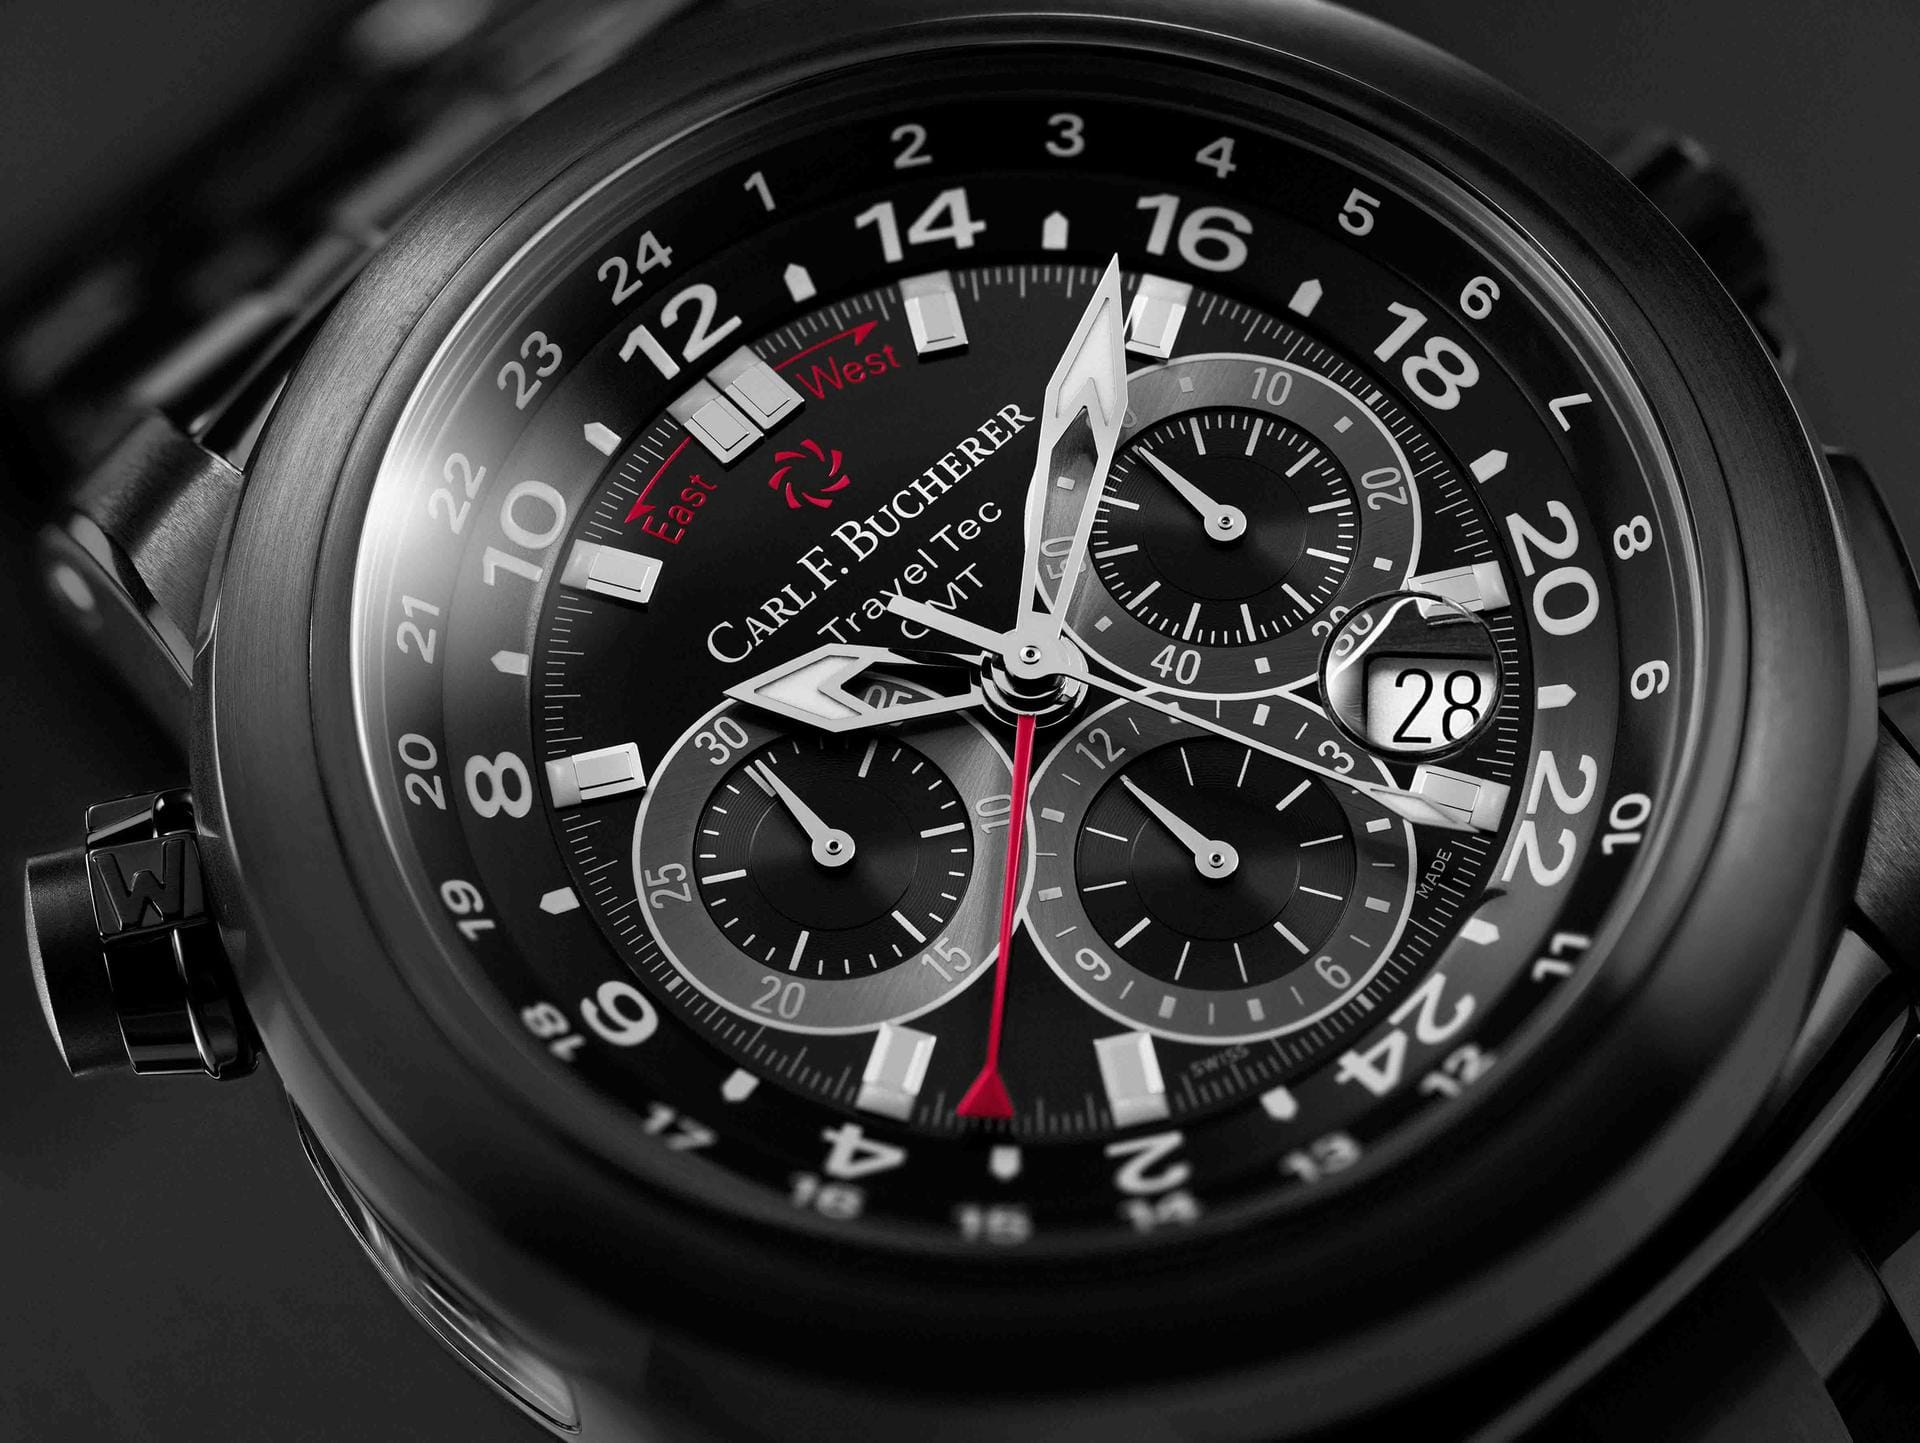 Carl F. Bucherer zeigt die Patravi TravelTec. Drei Zeitzonen vereint die Uhr.Die Uhr ist komplett in Schwarz gehalten und setzt auf die DLC-Beschichtung (diamond-like-carbon) von Edelstahlgehäuse und -armband.